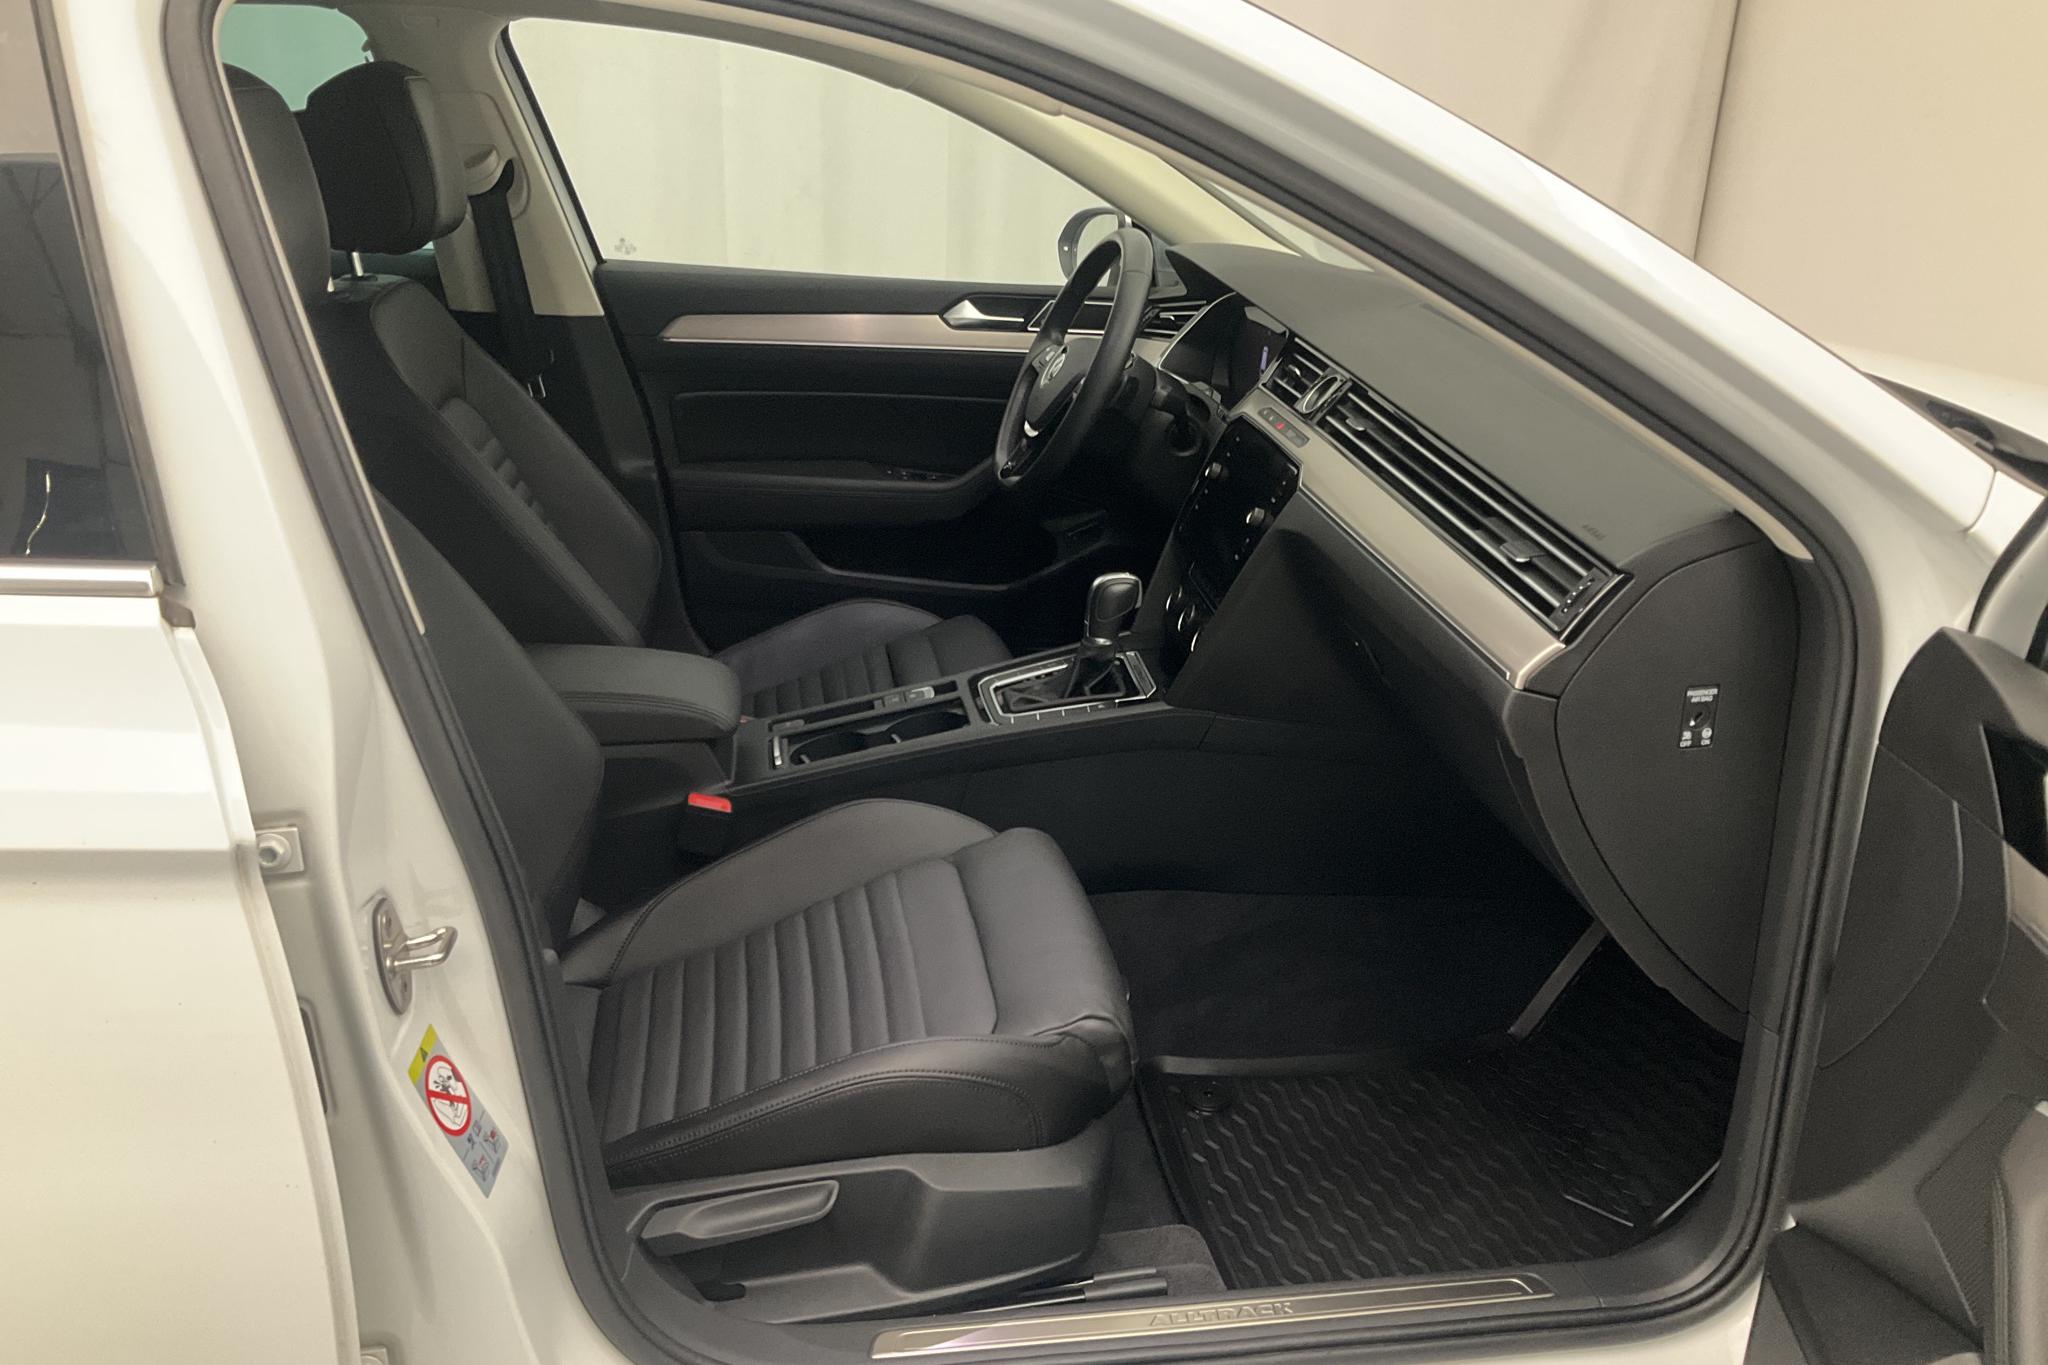 VW Passat Alltrack 2.0 TSI Sportscombi 4MOTION (220hk) - 45 040 km - Automatic - white - 2018